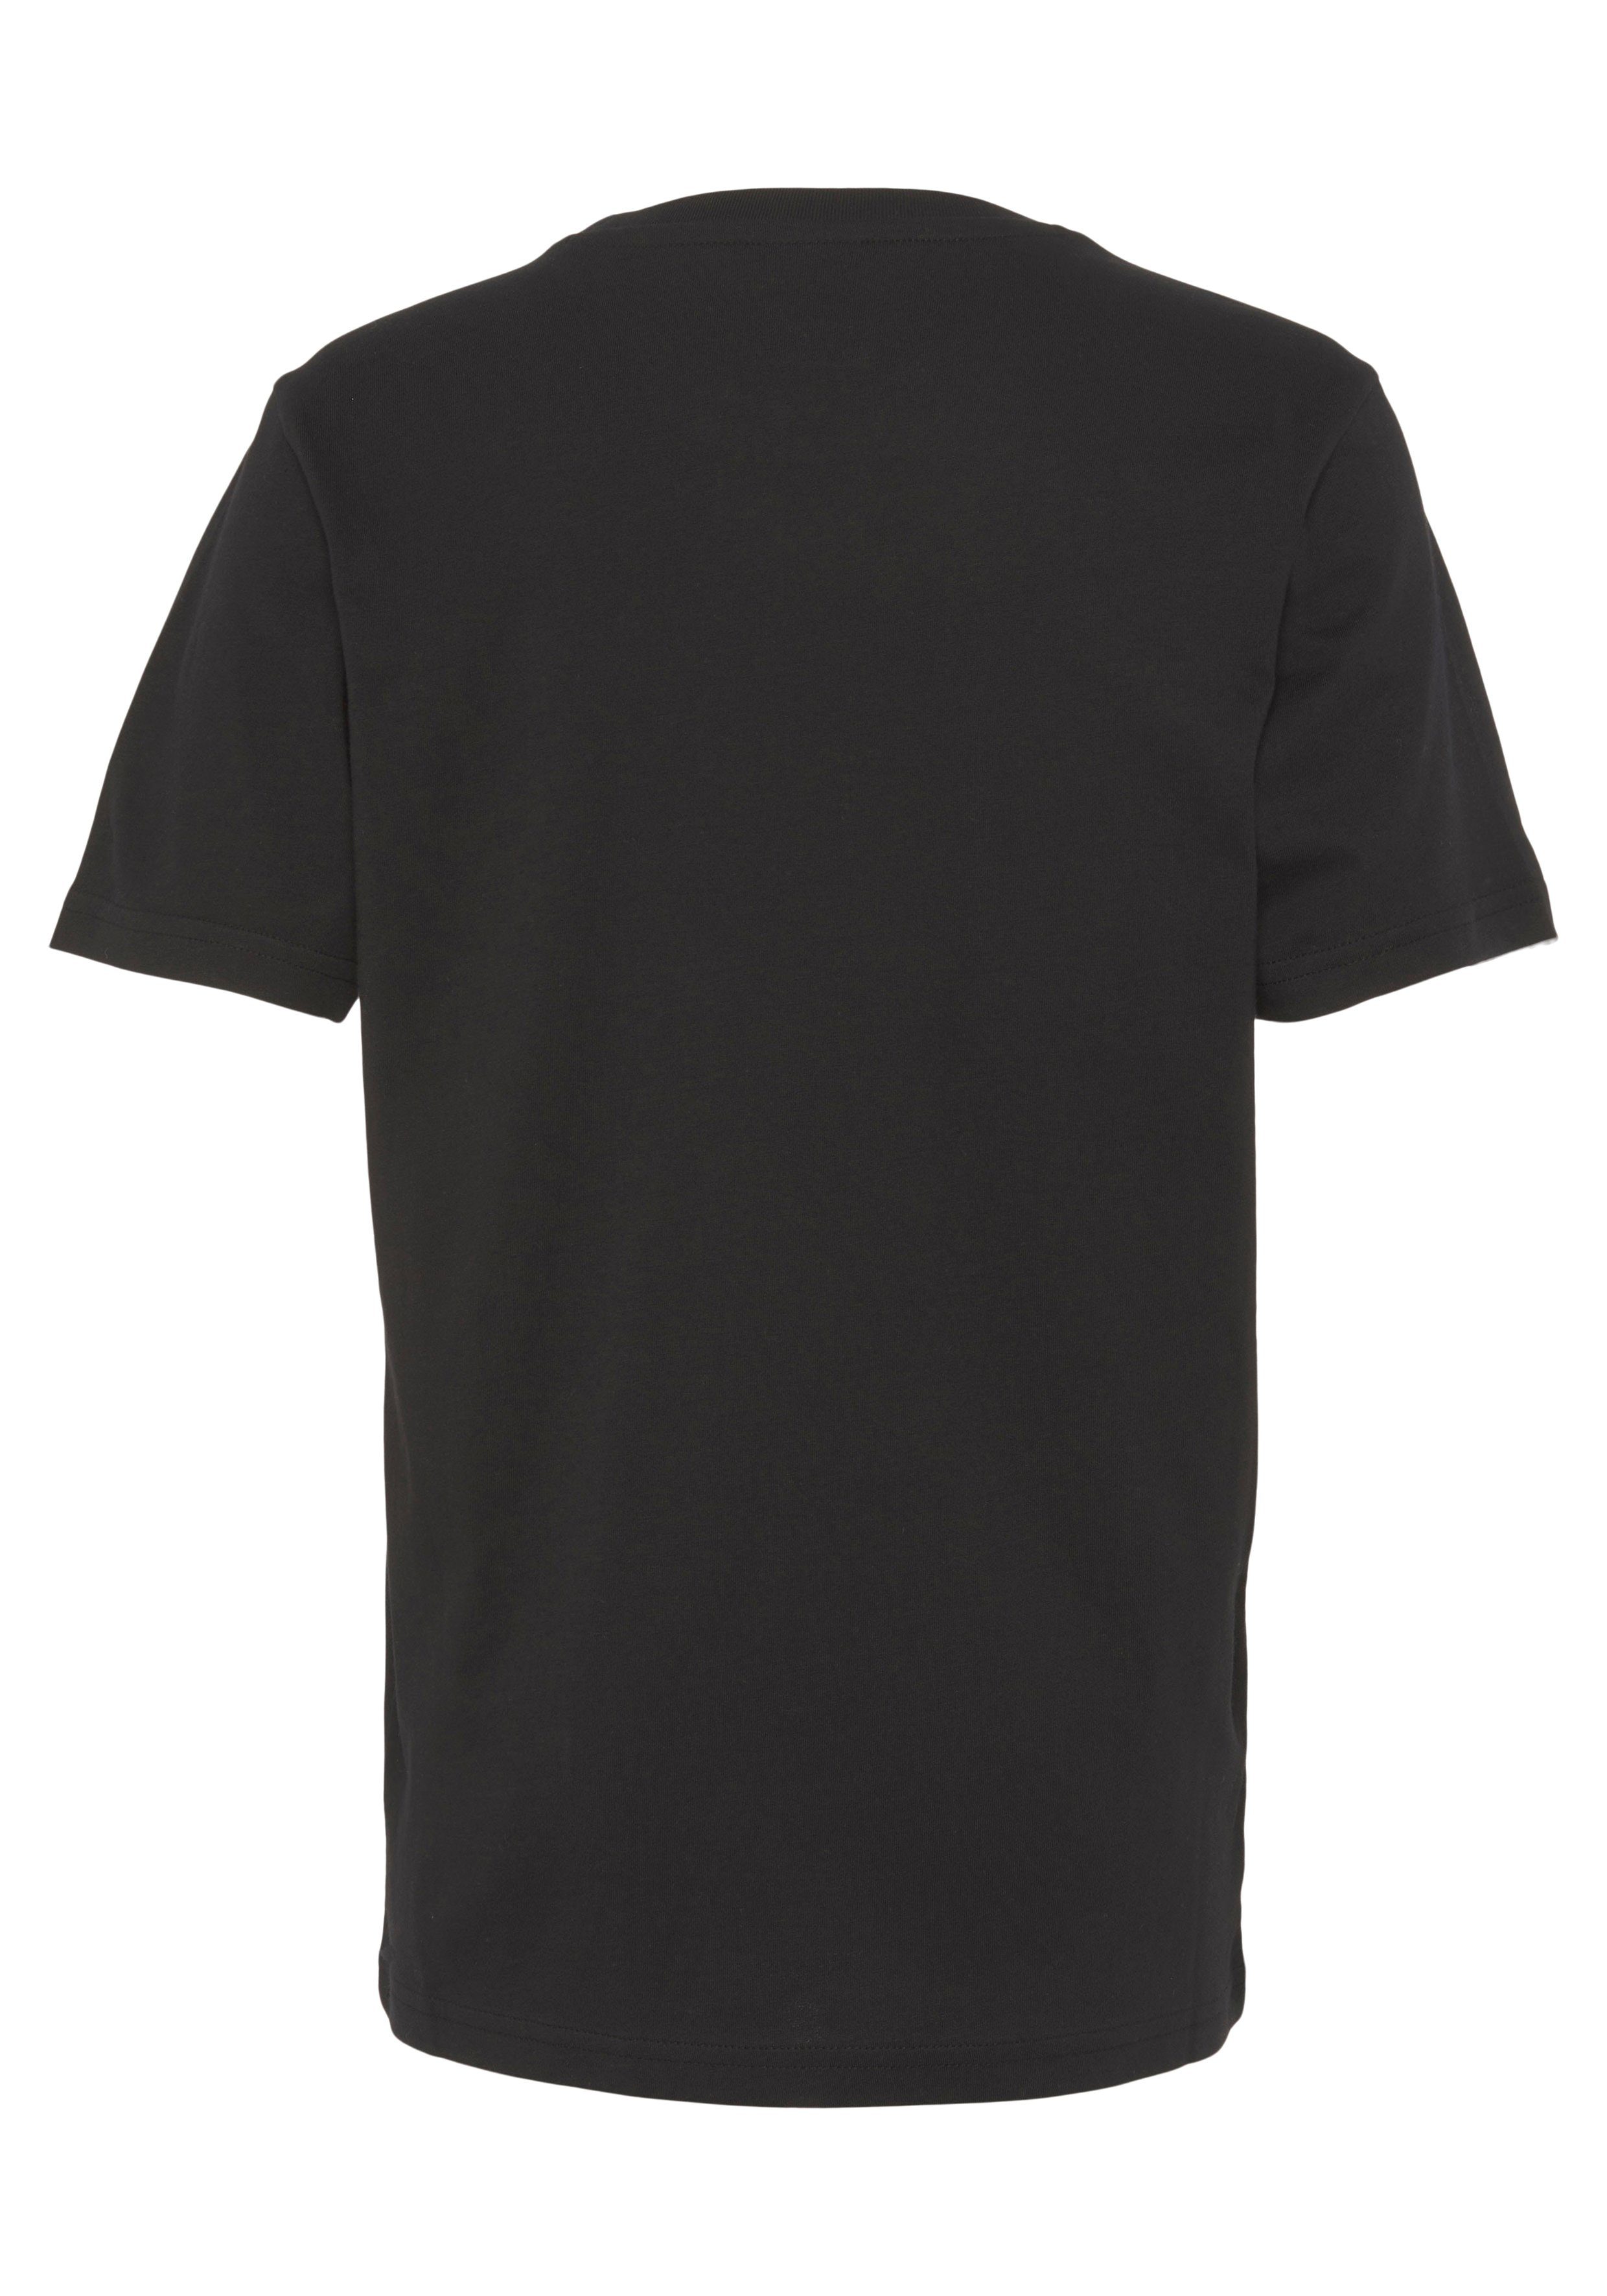 - Kinder schwarz für Champion Crewneck T-Shirt T-Shirt